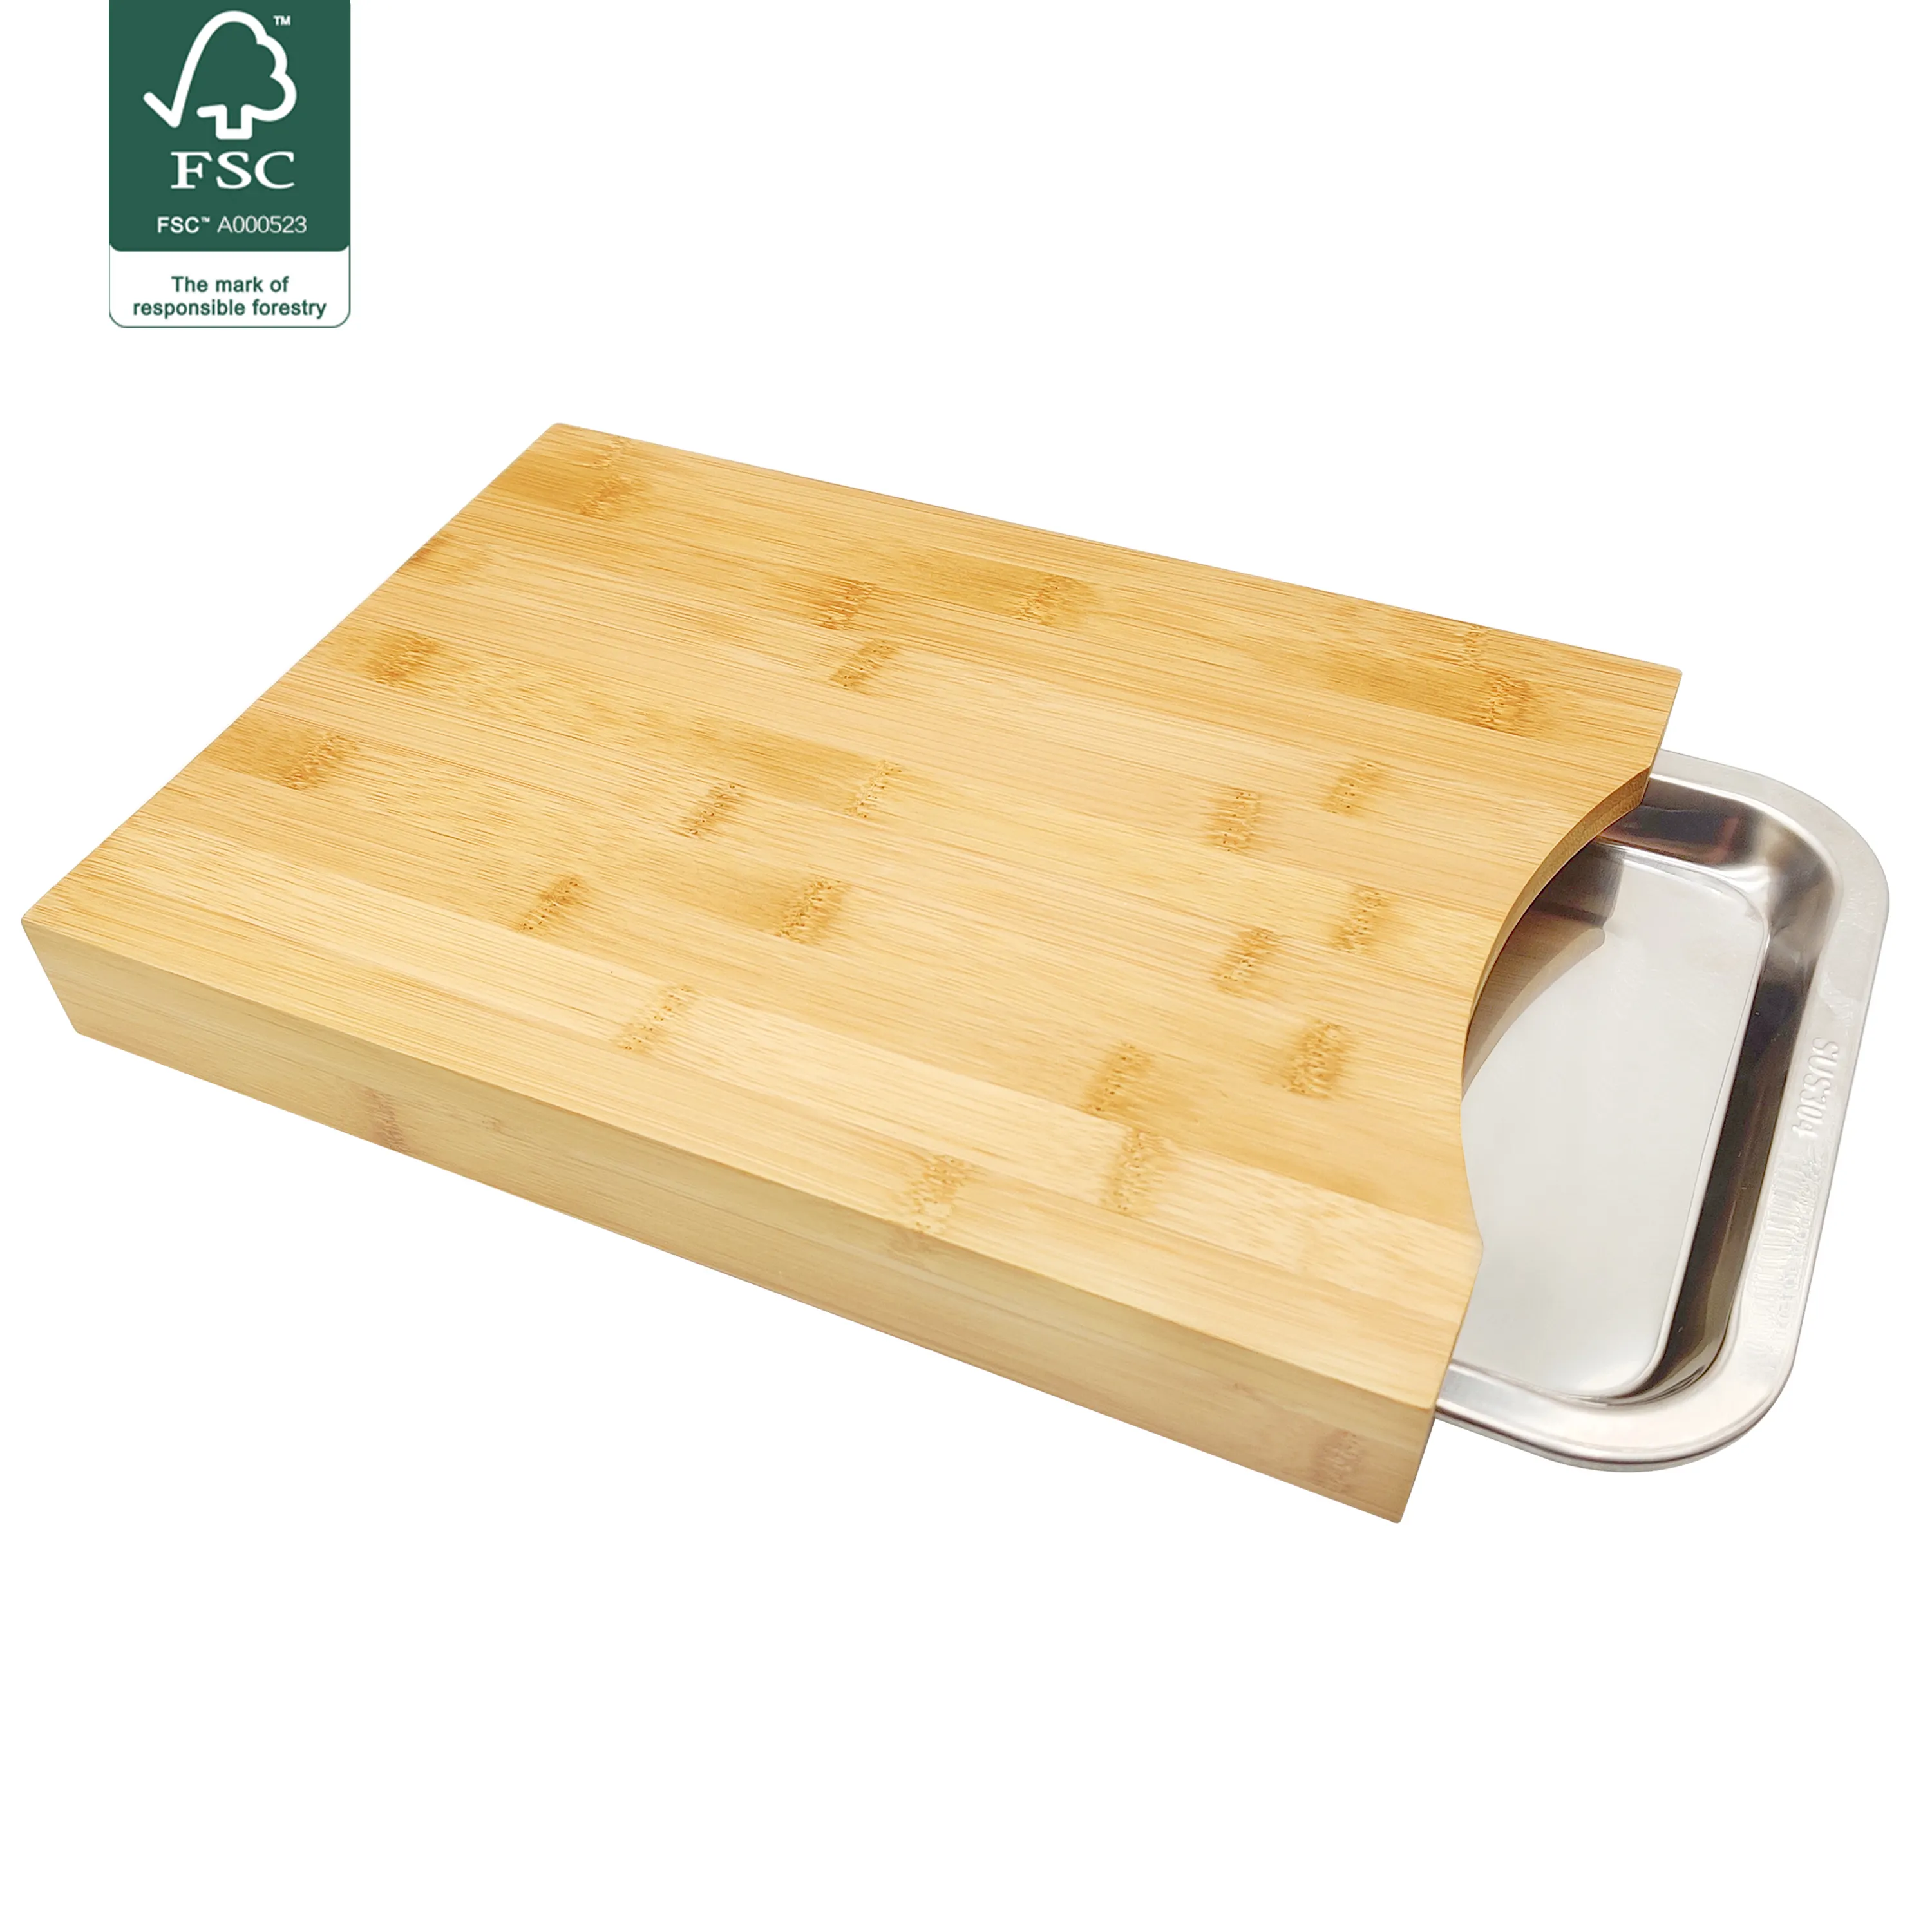 Utensilios de cocina Tabla de cortar de bambú orgánico ecológico con placas de acero inoxidable